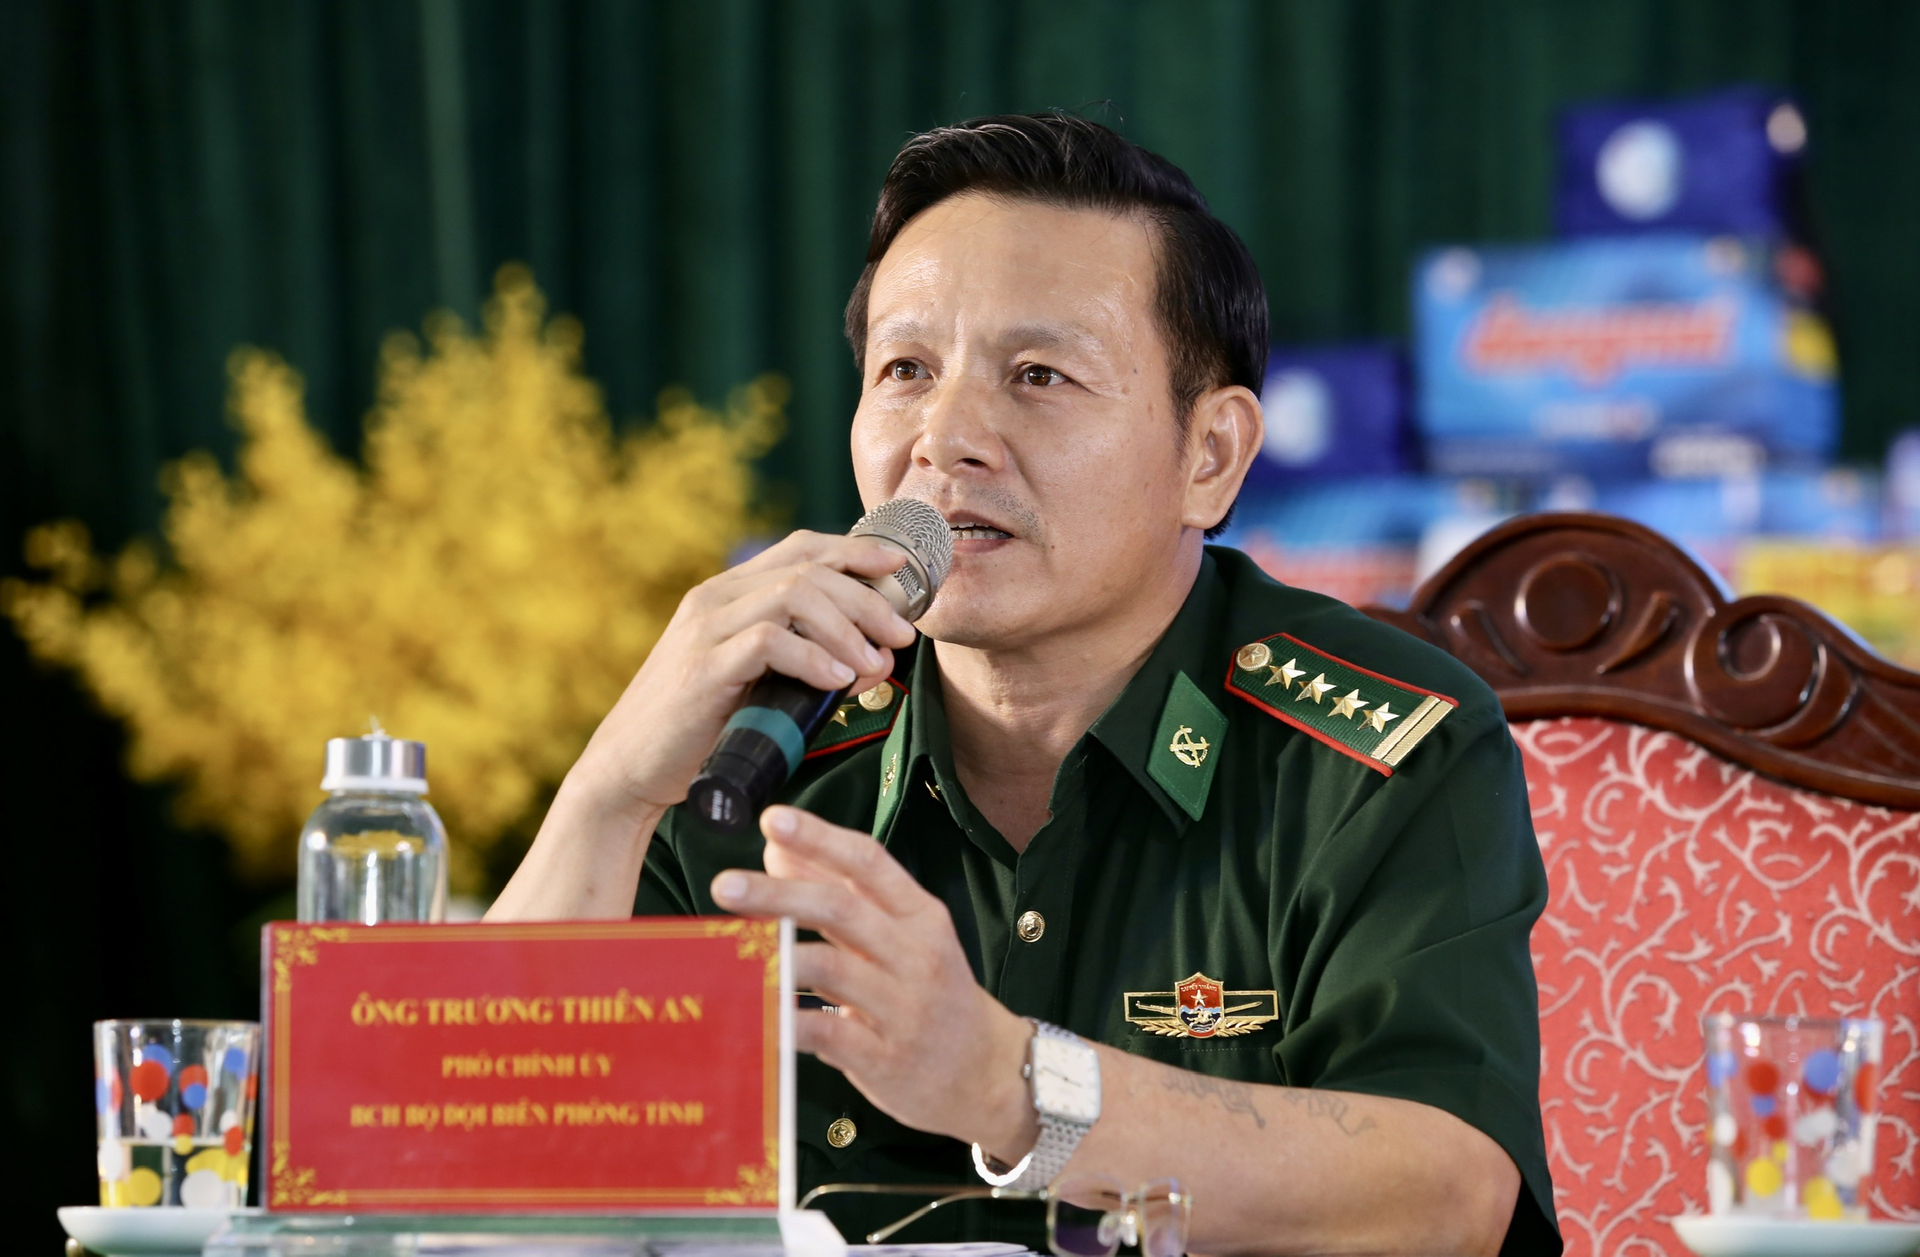 Ông Trương Thiên An, Phó Chính ủy Bộ Chỉ hủy Bộ đội Biên phòng tỉnh Phú Yên trả lời câu hỏi của ngư dân. Ảnh: PL.